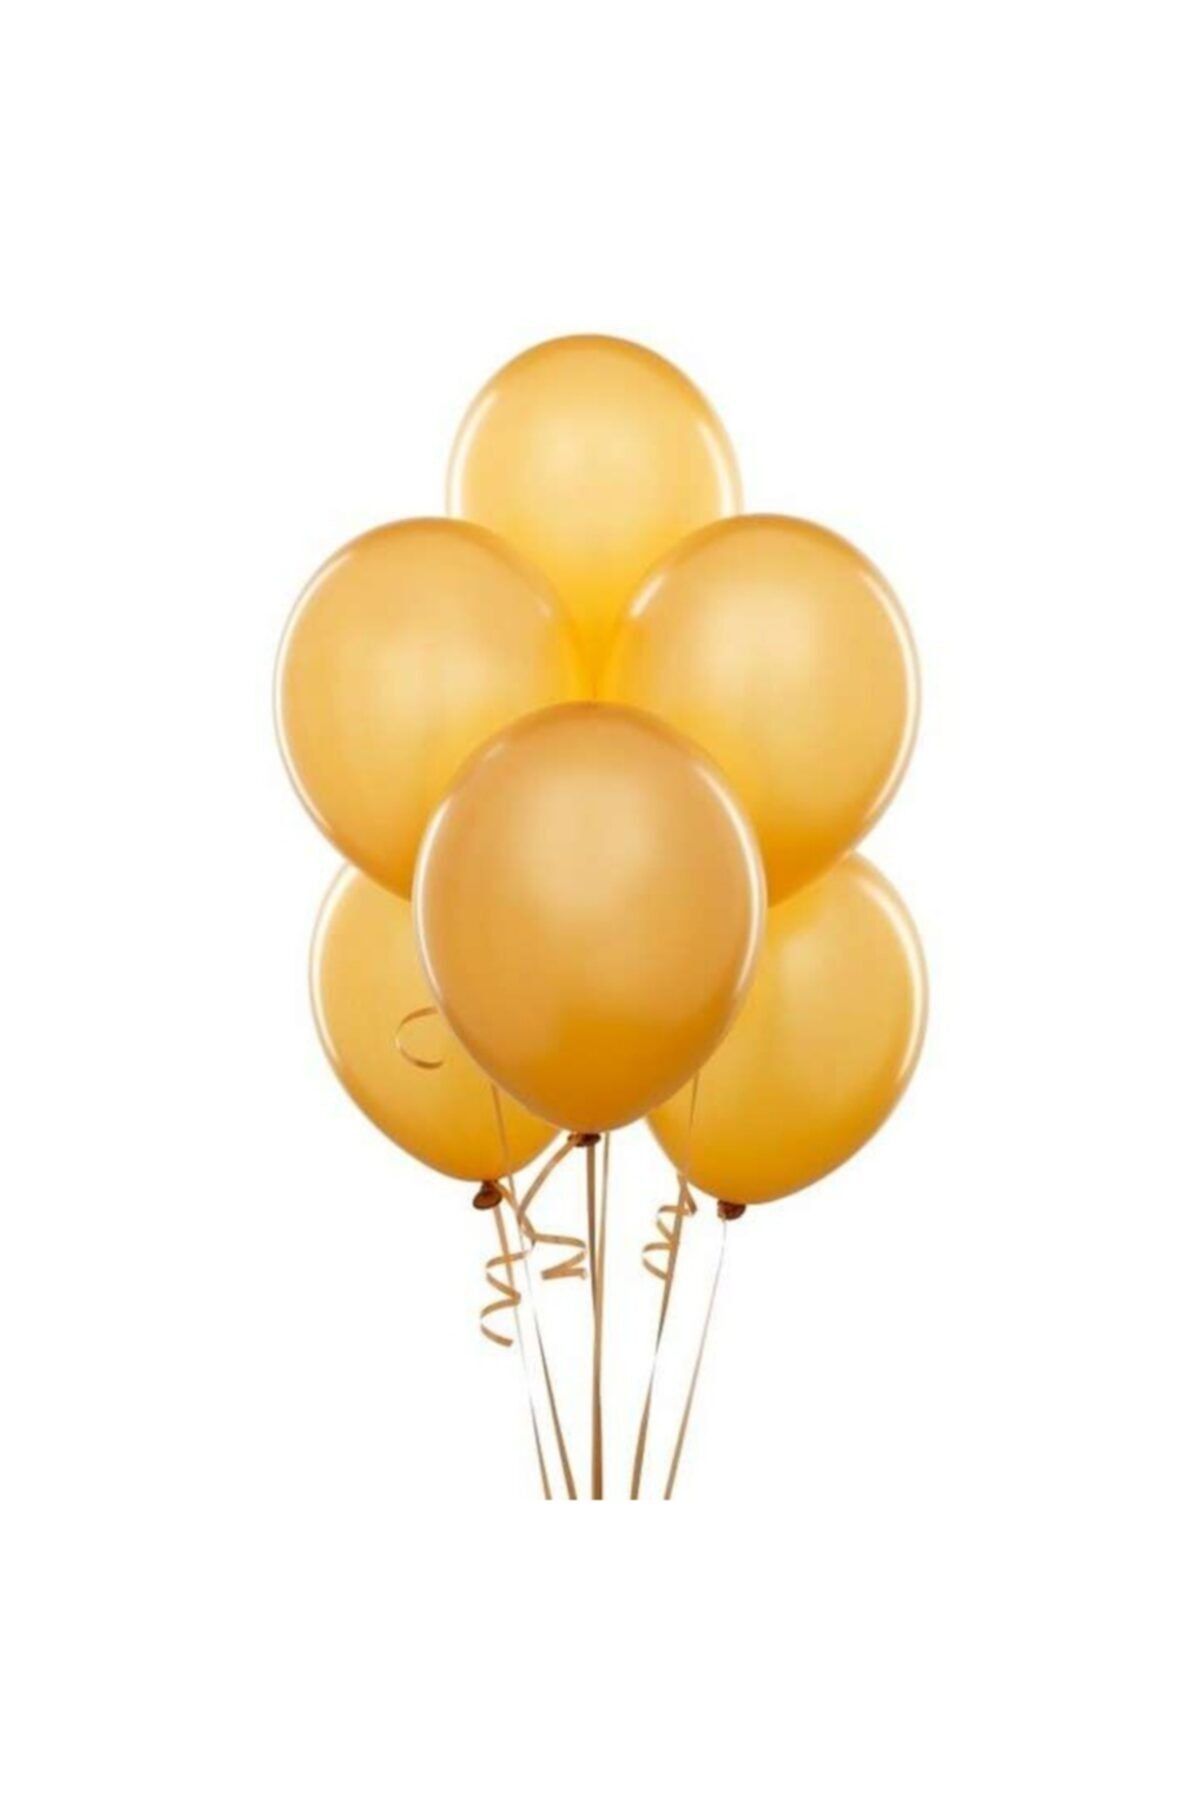 Magic Hobby Altın Gold Renk Metalik Balon 25 Adet ( 25'li Paket)